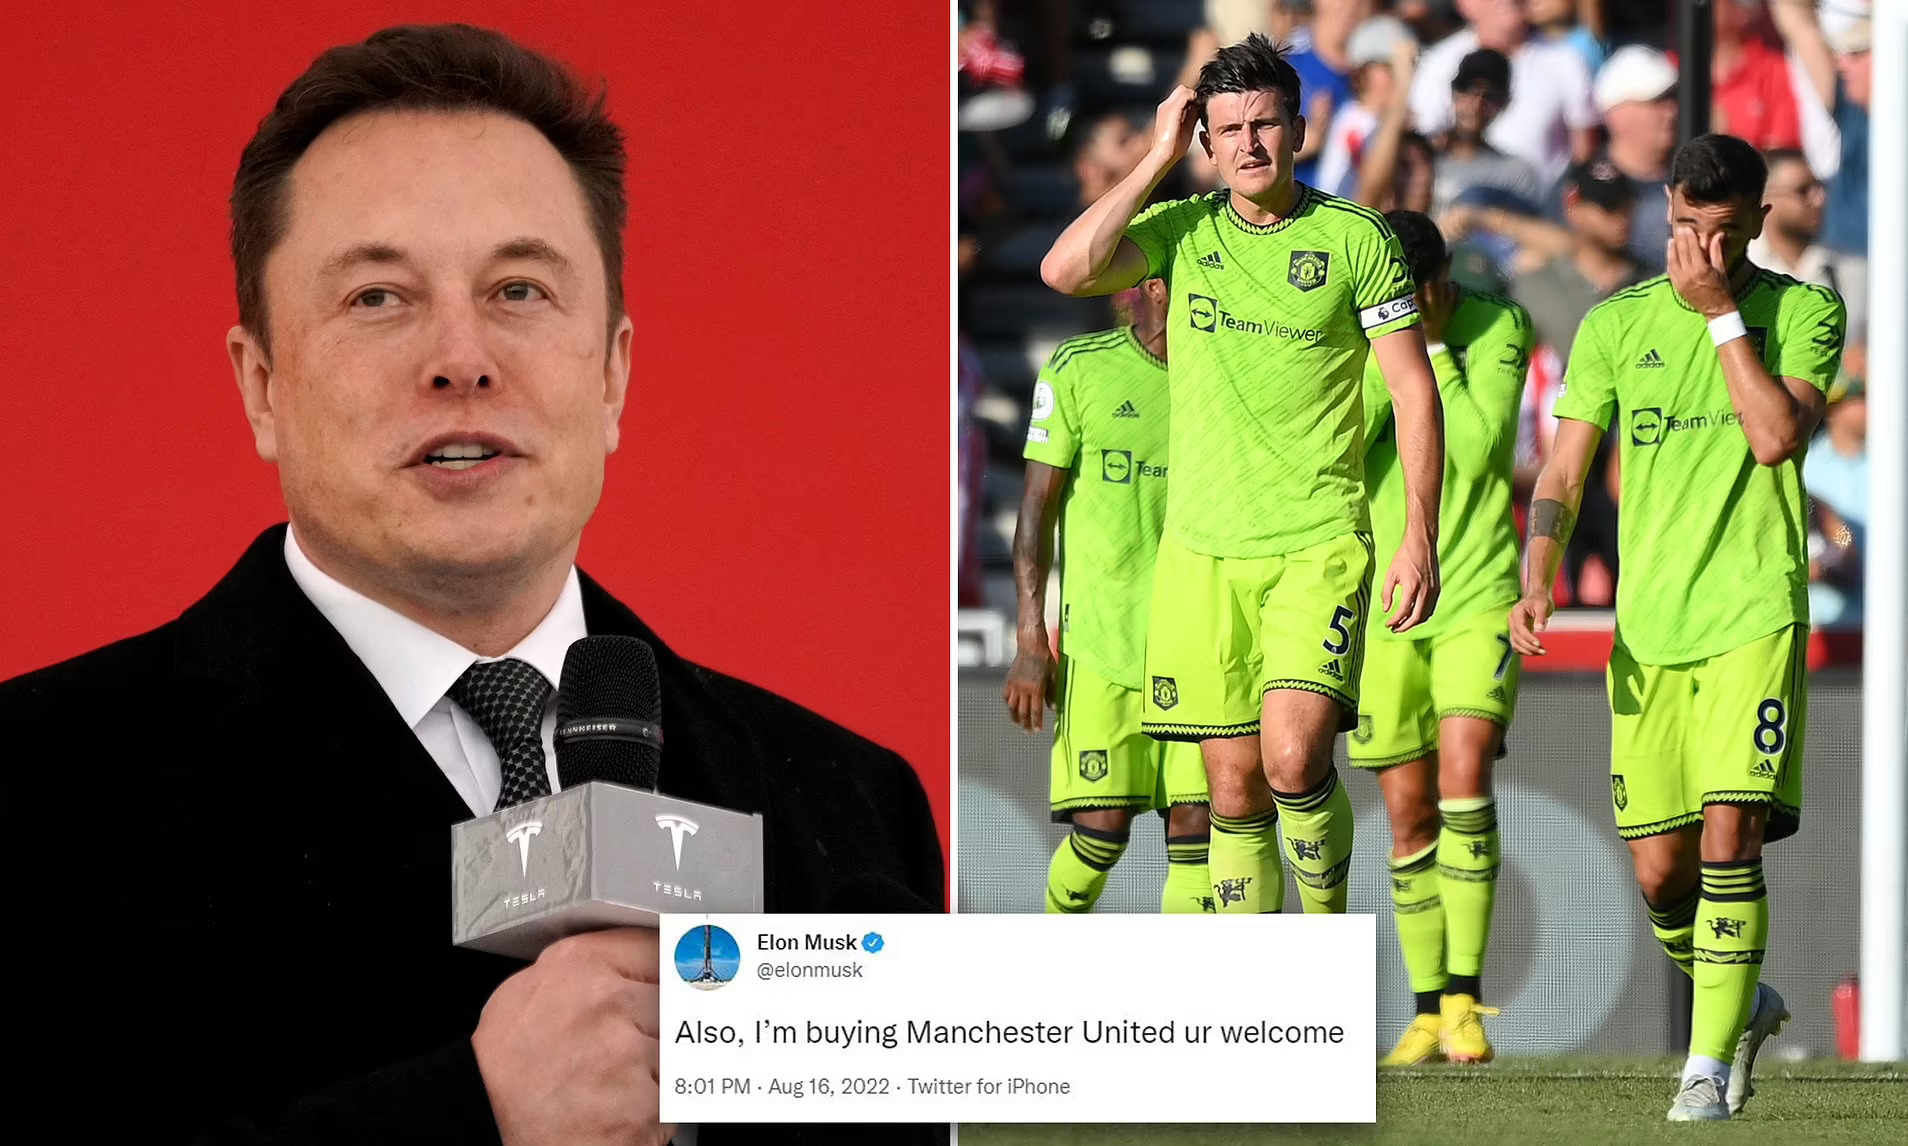 Elon Musk nói rằng, dòng tweet về việc mua Manchester United là một trò đùa. Ảnh: @AFP.